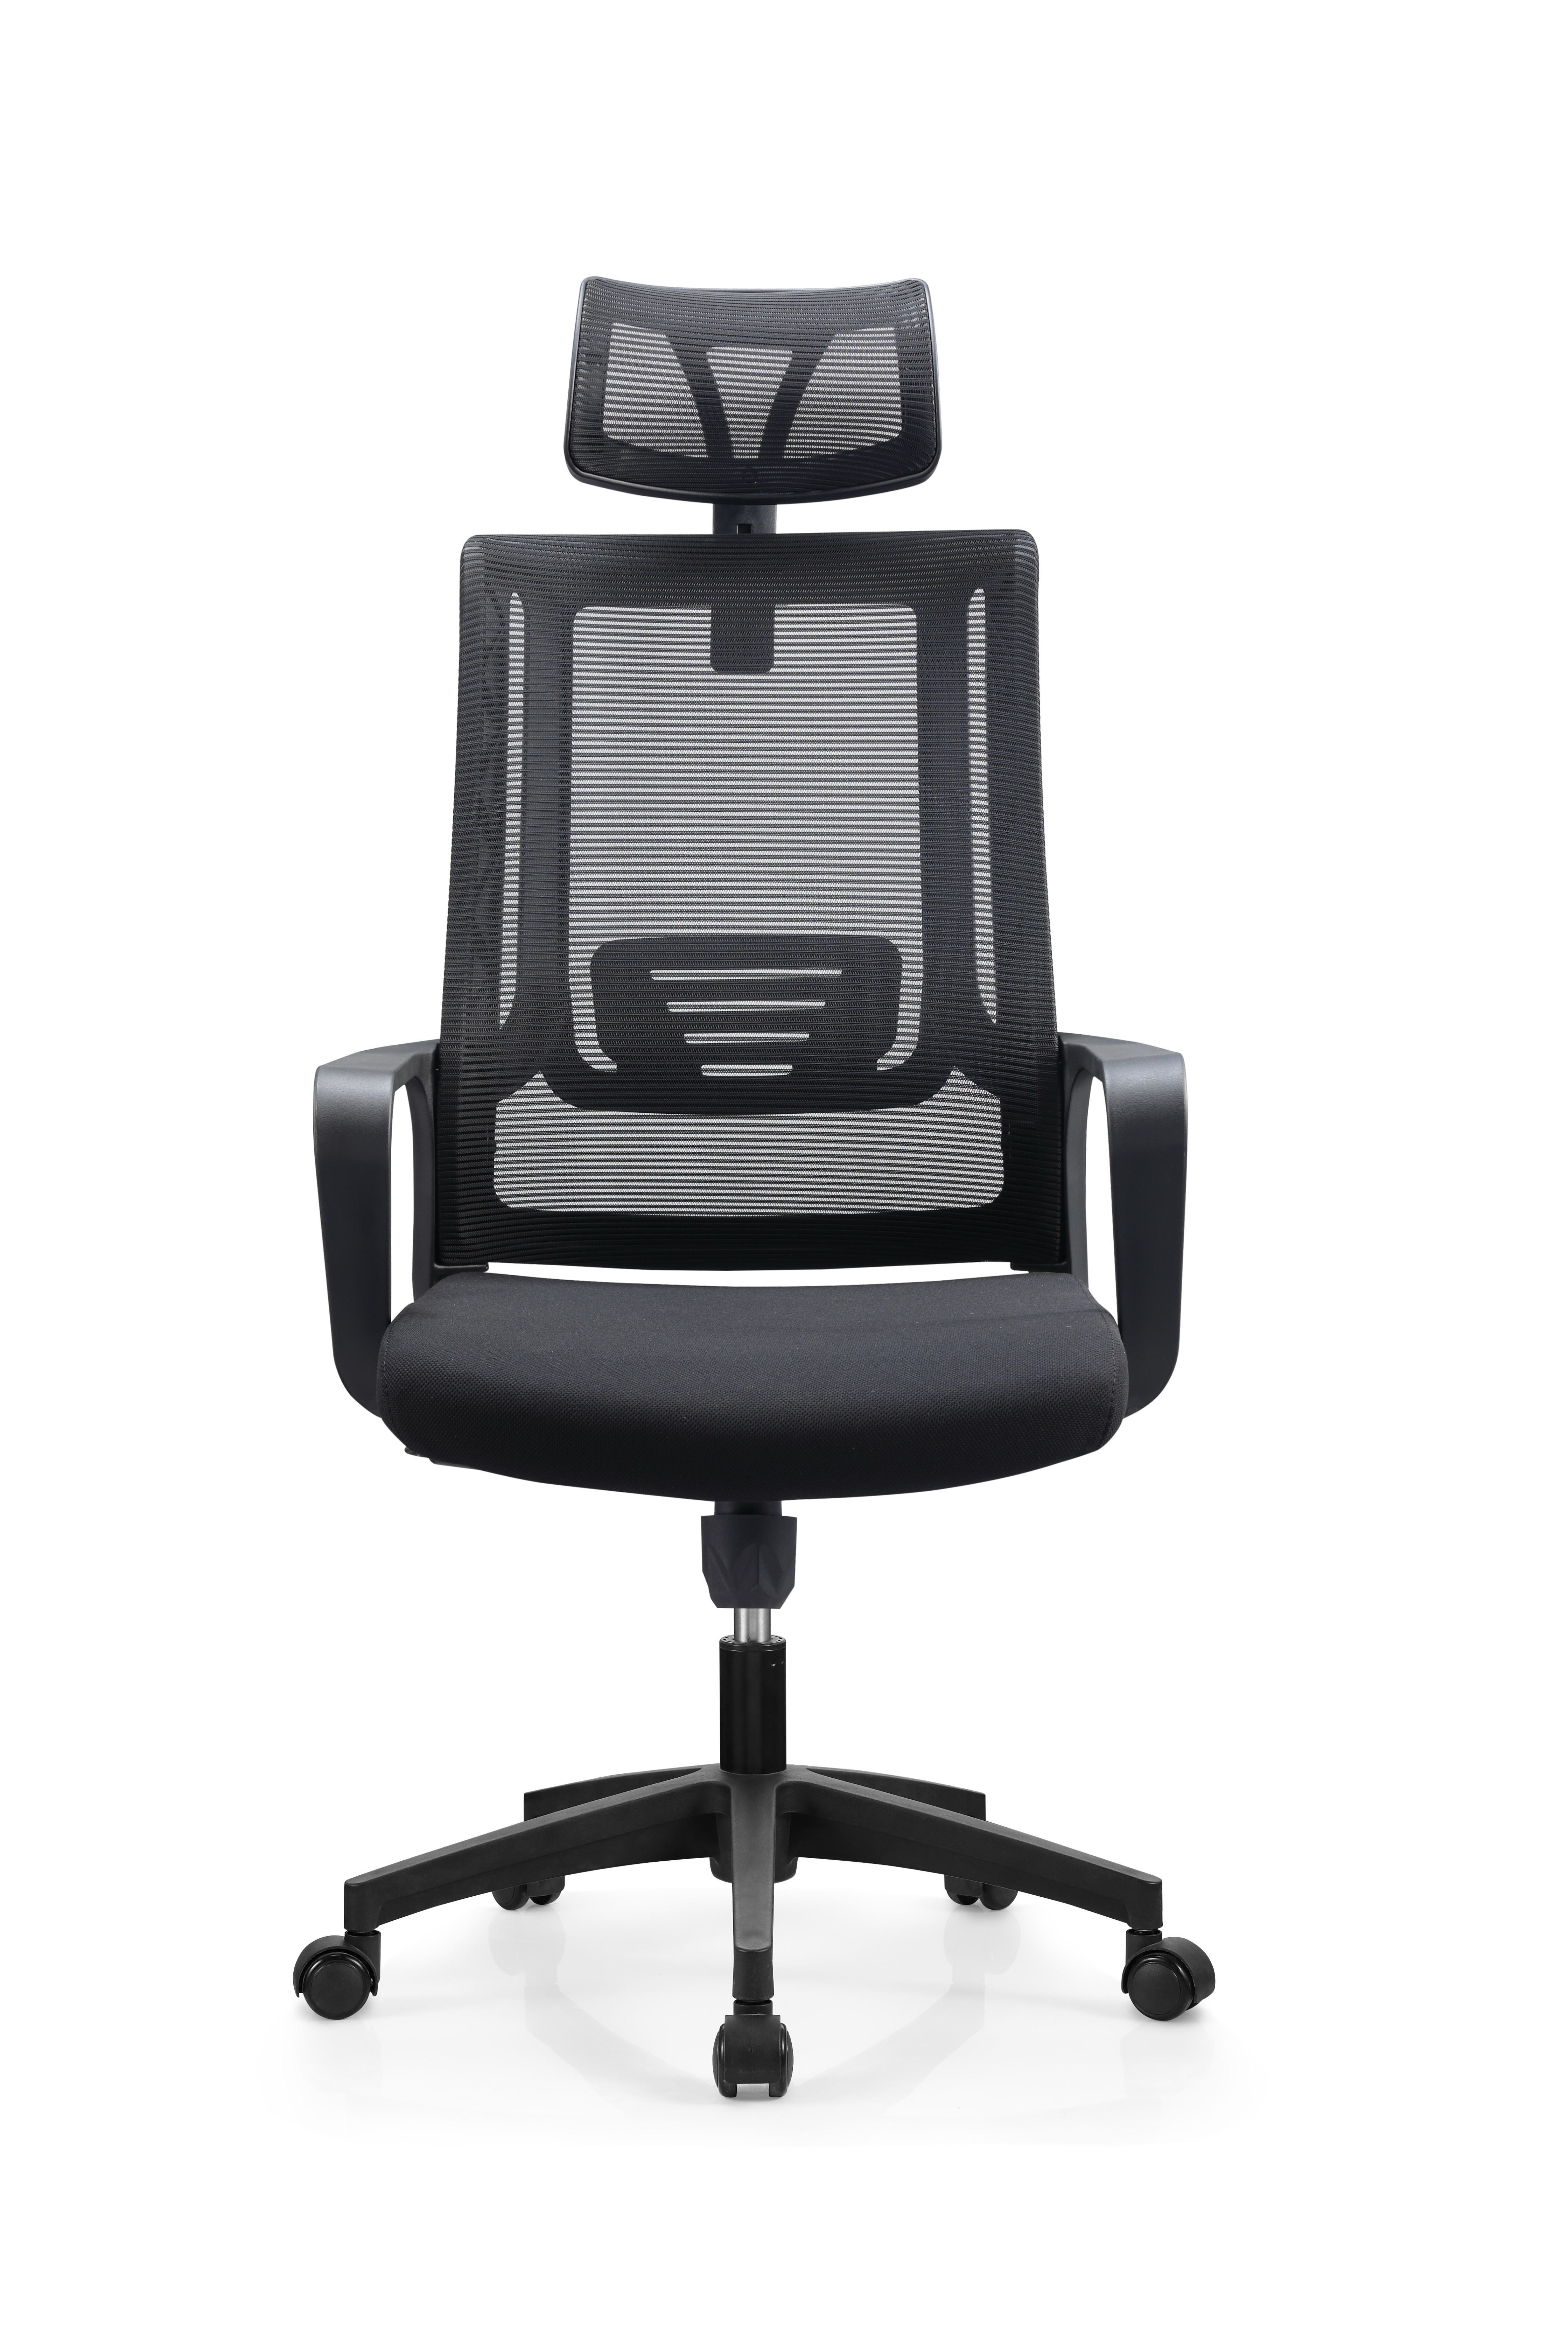 中国 Newcity 530A厂家直销网椅质量保证价格网椅高品质现代行政网椅批发设计电脑网椅供应商中国佛山 制造商